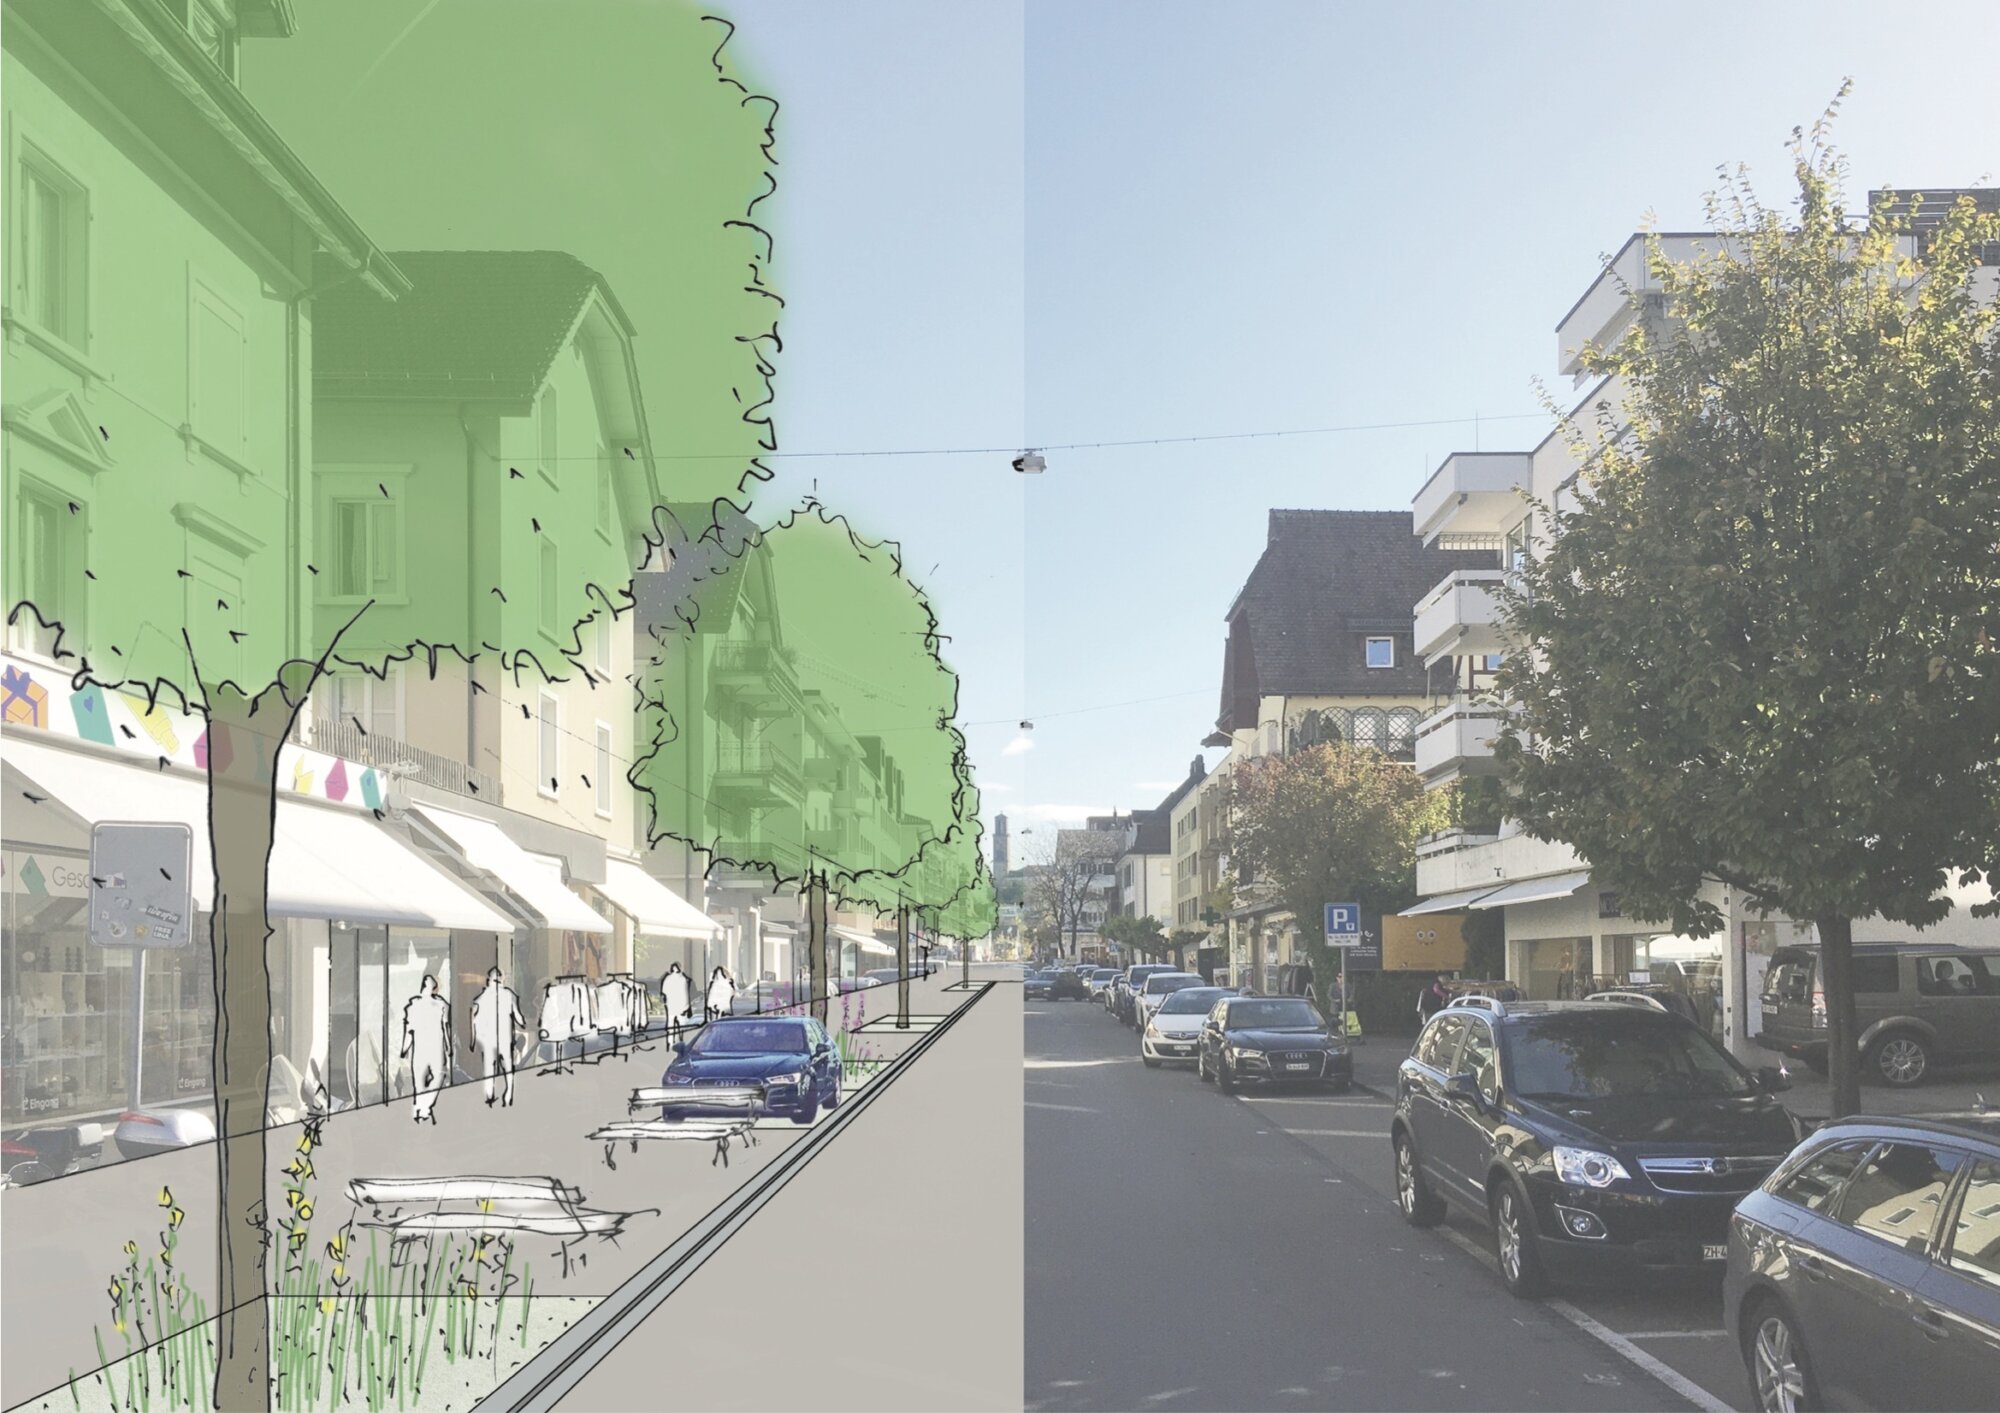 Gotthardstrasse, Thalwil: Montage vorher-nachher. Abbildung: © Gemeinde Thalwil